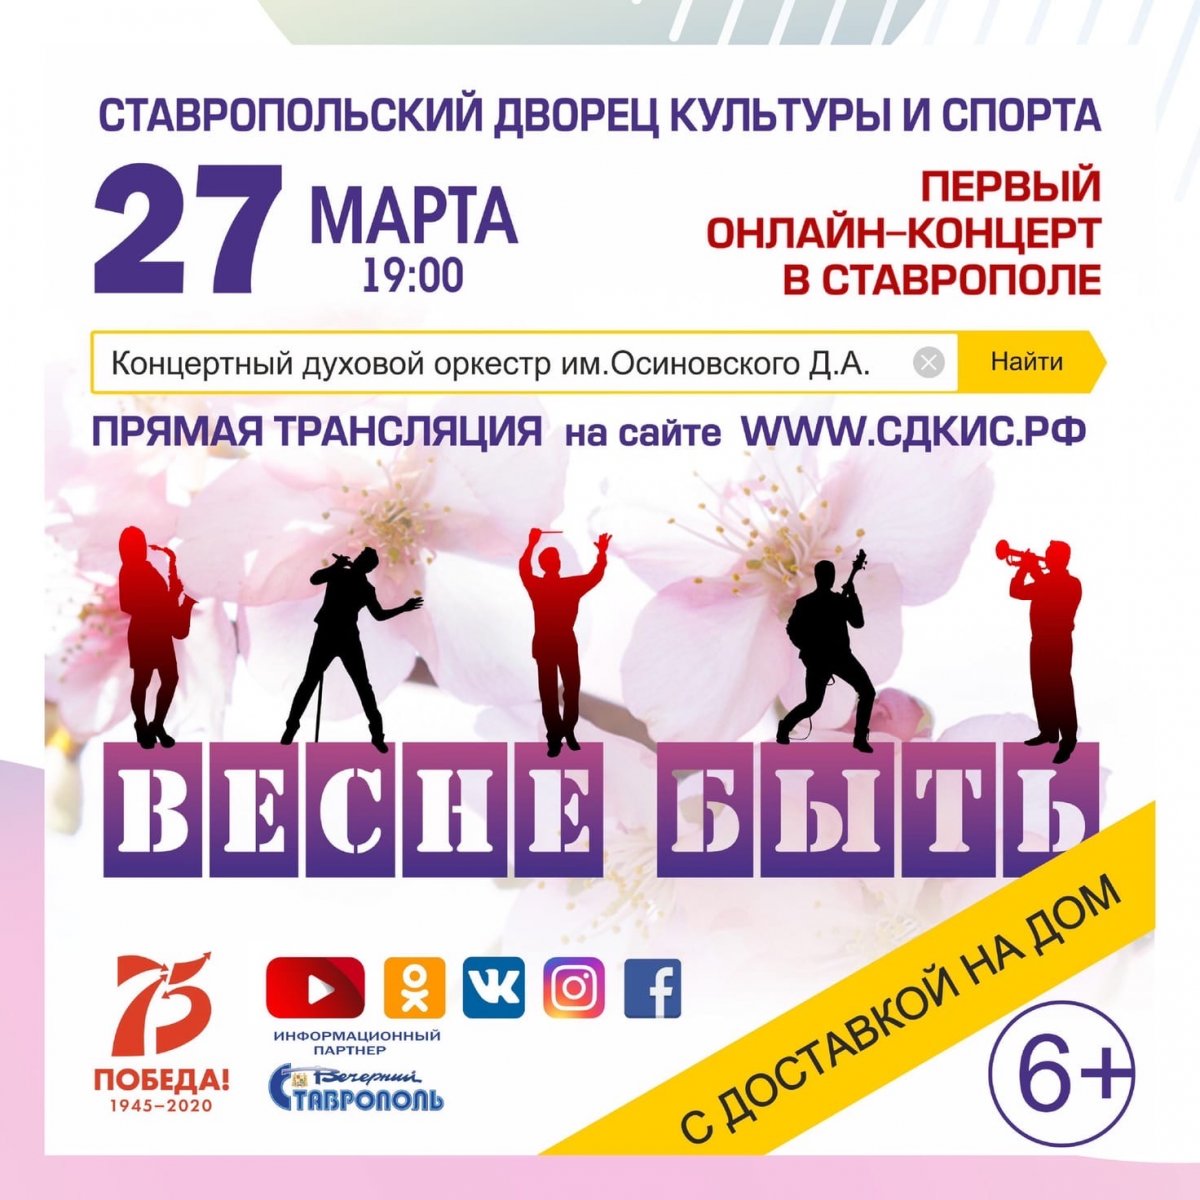 «Весне быть» - первый онлайн-концерт в Ставрополе!